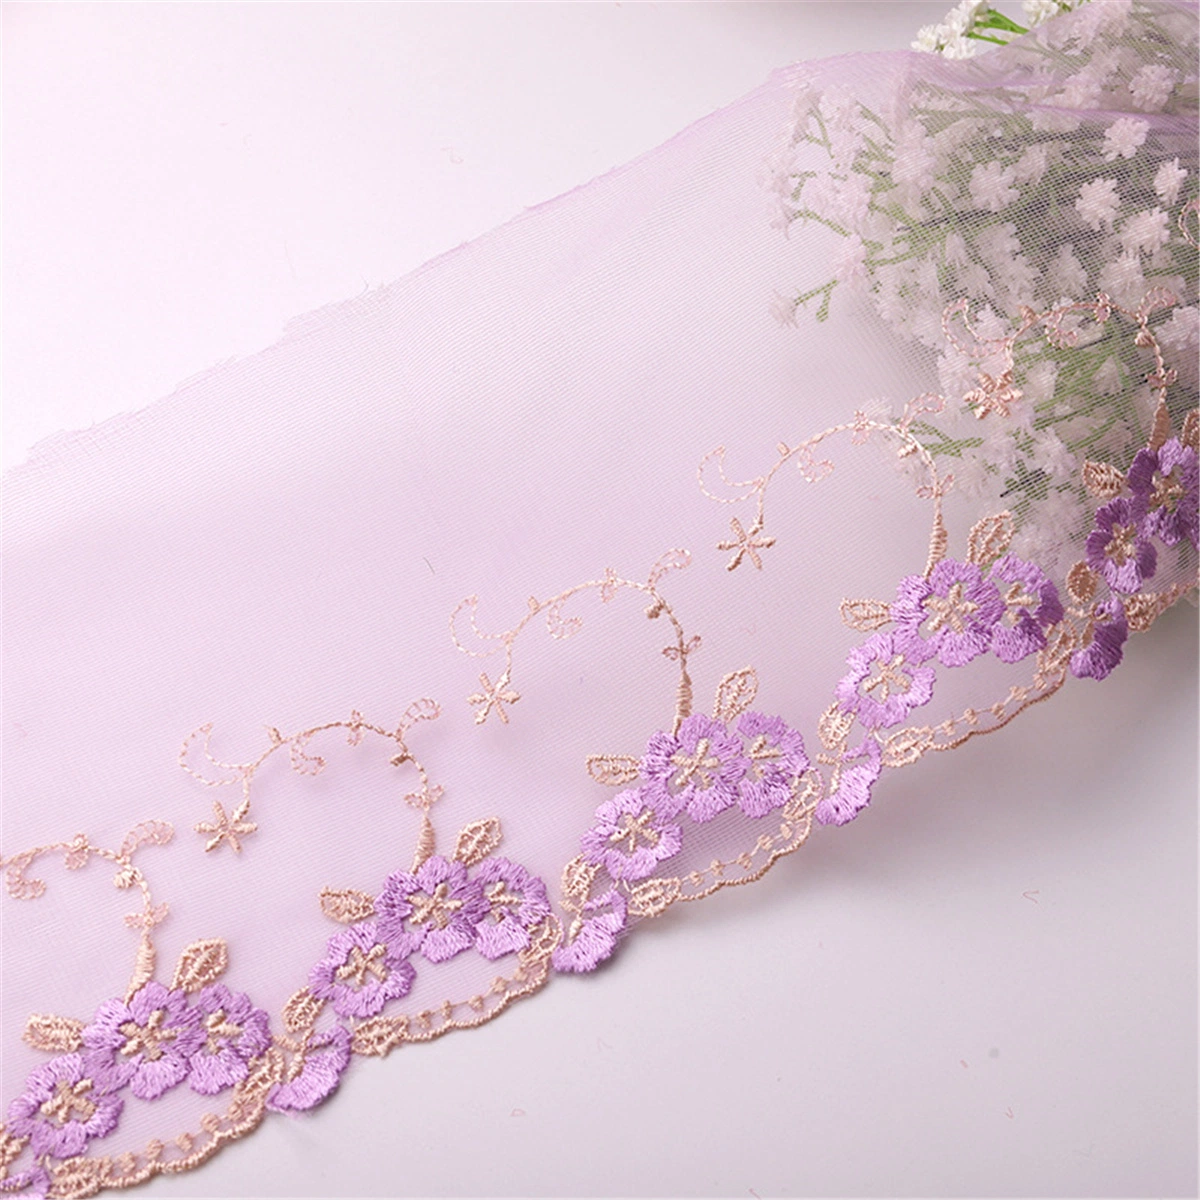 تصميم حفلات الزفاف على أعلى مستوى مبرودري النسيج النسيج النسيج والملابس الداخلية ملحقات قياس الألوان Lace